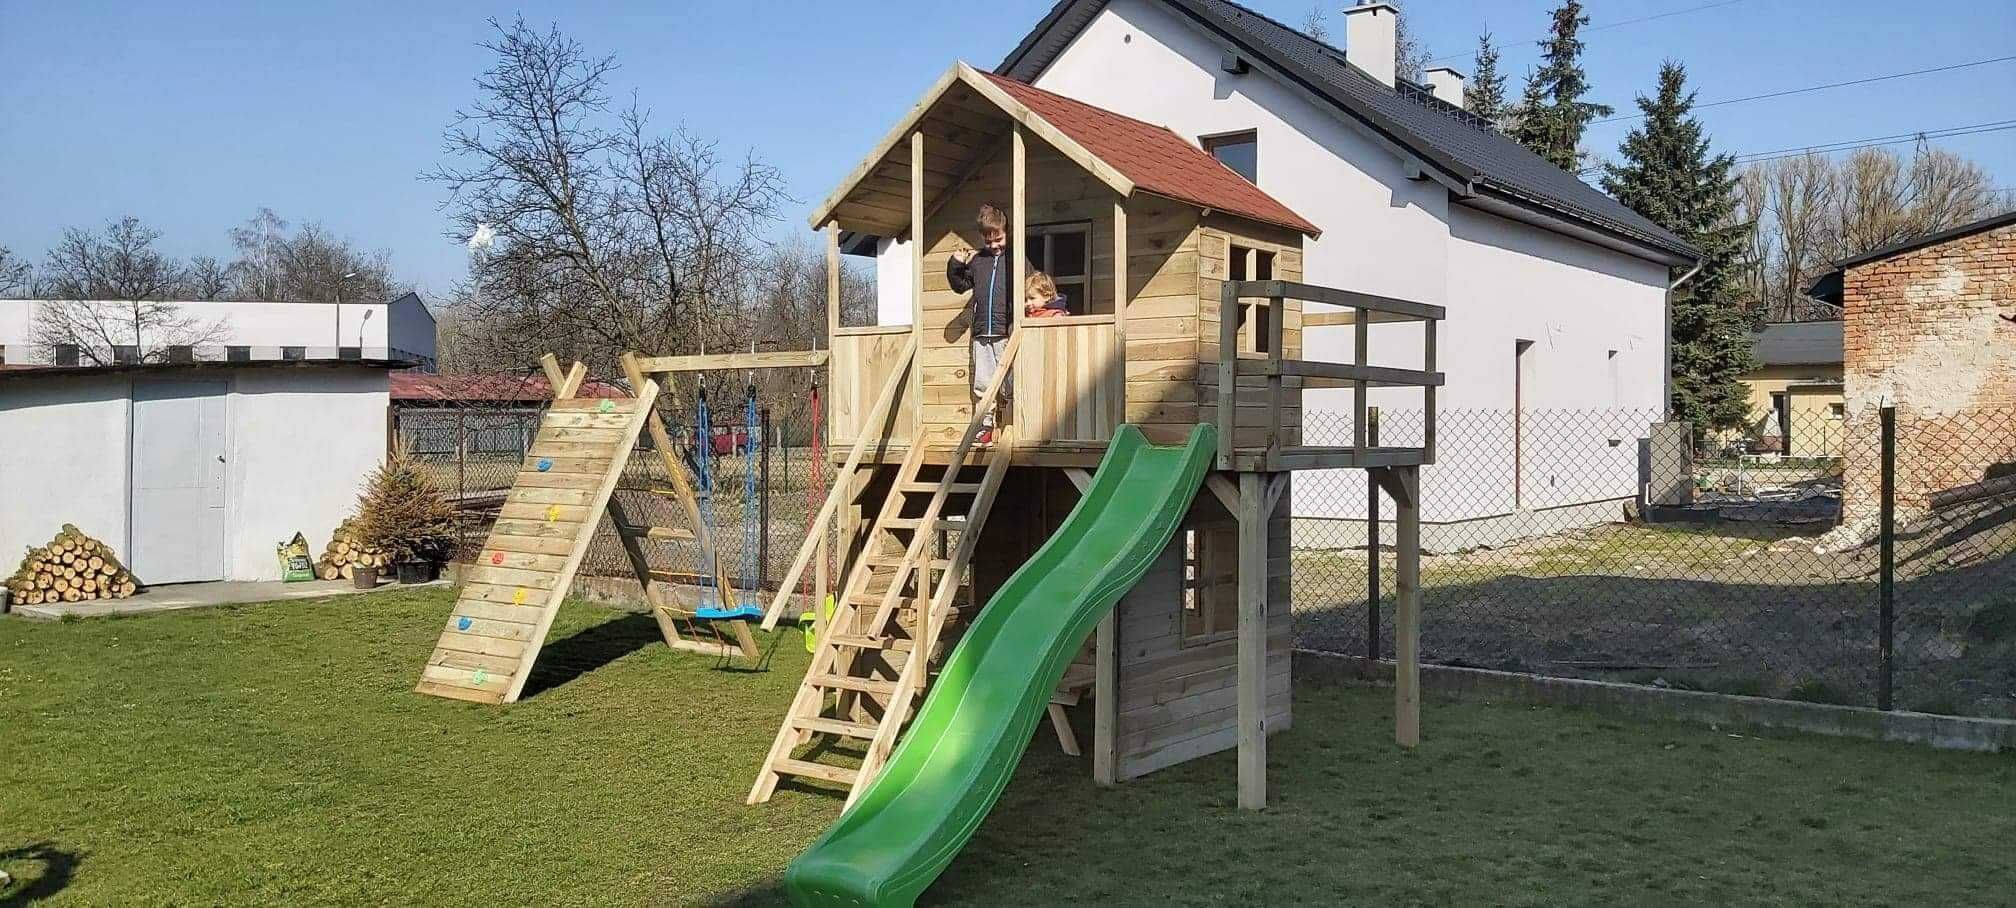 PROMOCJA ! Drewniany Plac  zabaw dla  dzieci   KRZYŚ   !!